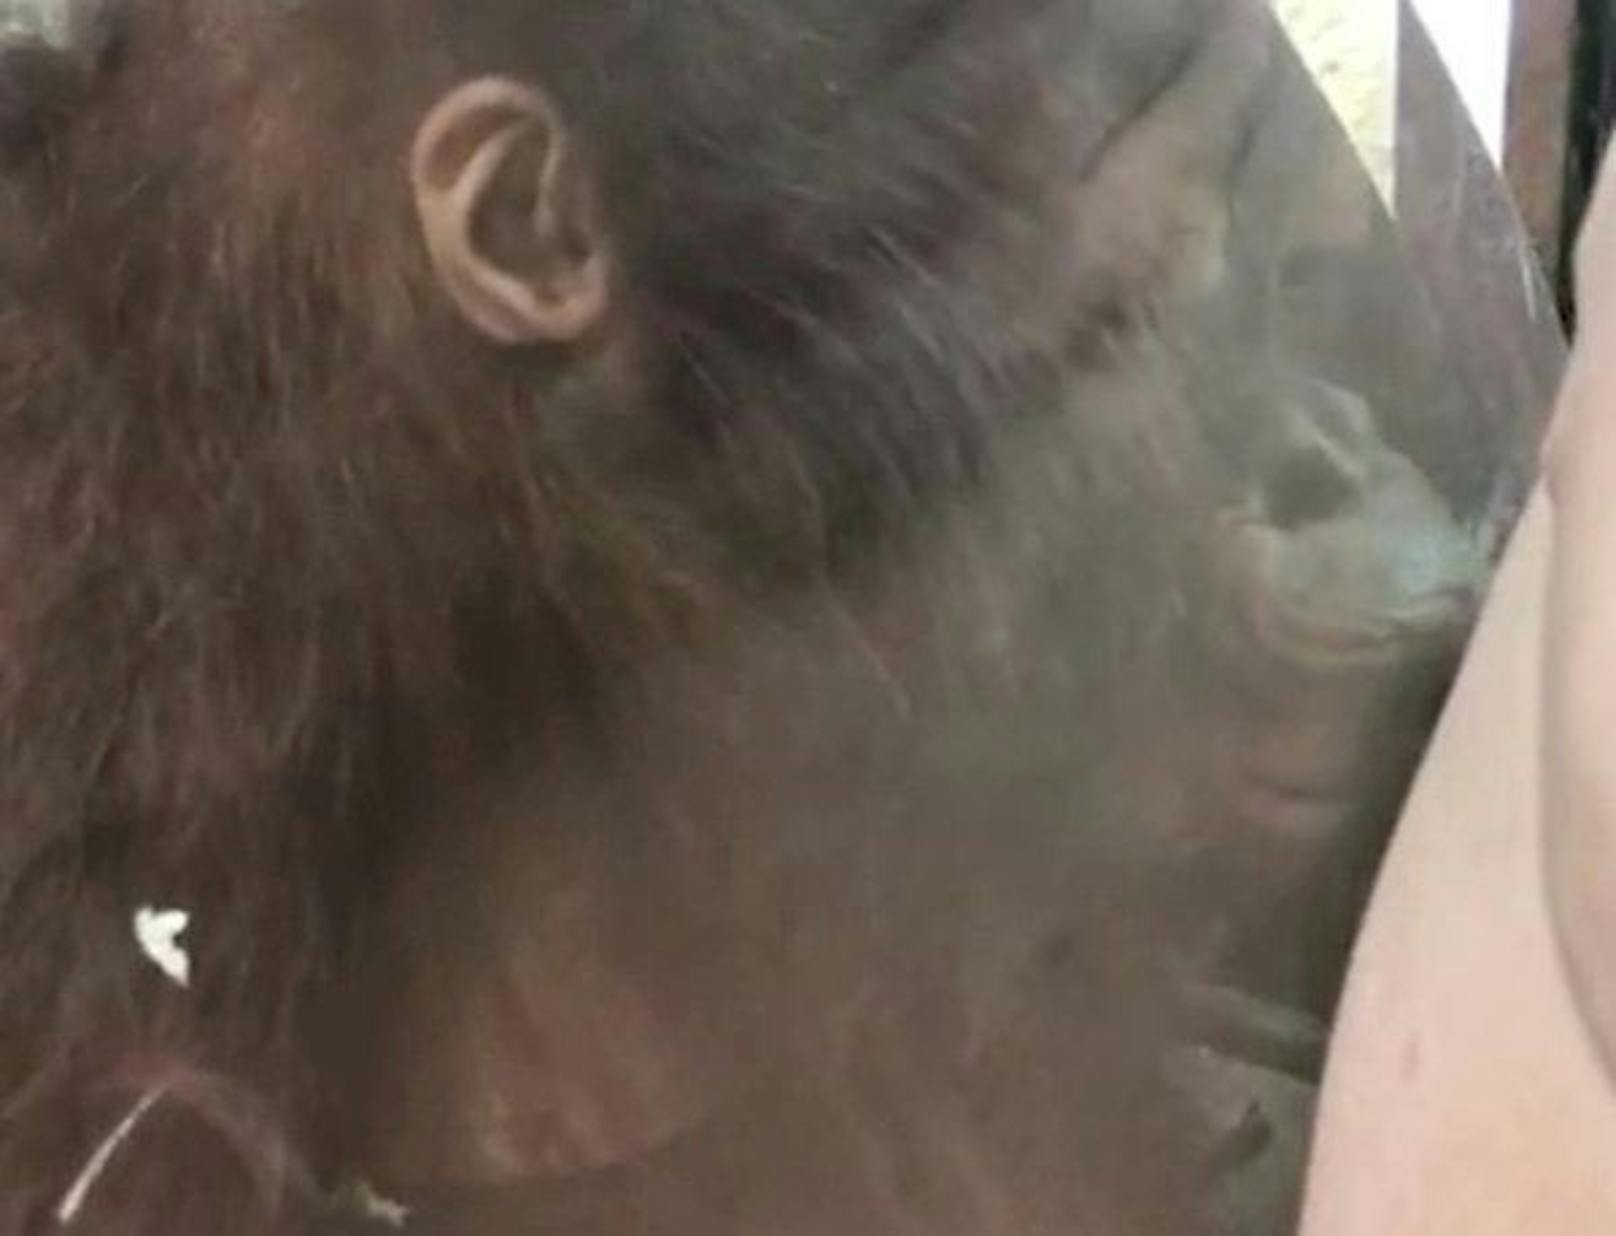 Das Orang-Utan-Baby beugte sich nach vorne und küsste den kleinen Babybauch der werdenden Mutter durch das Glas.